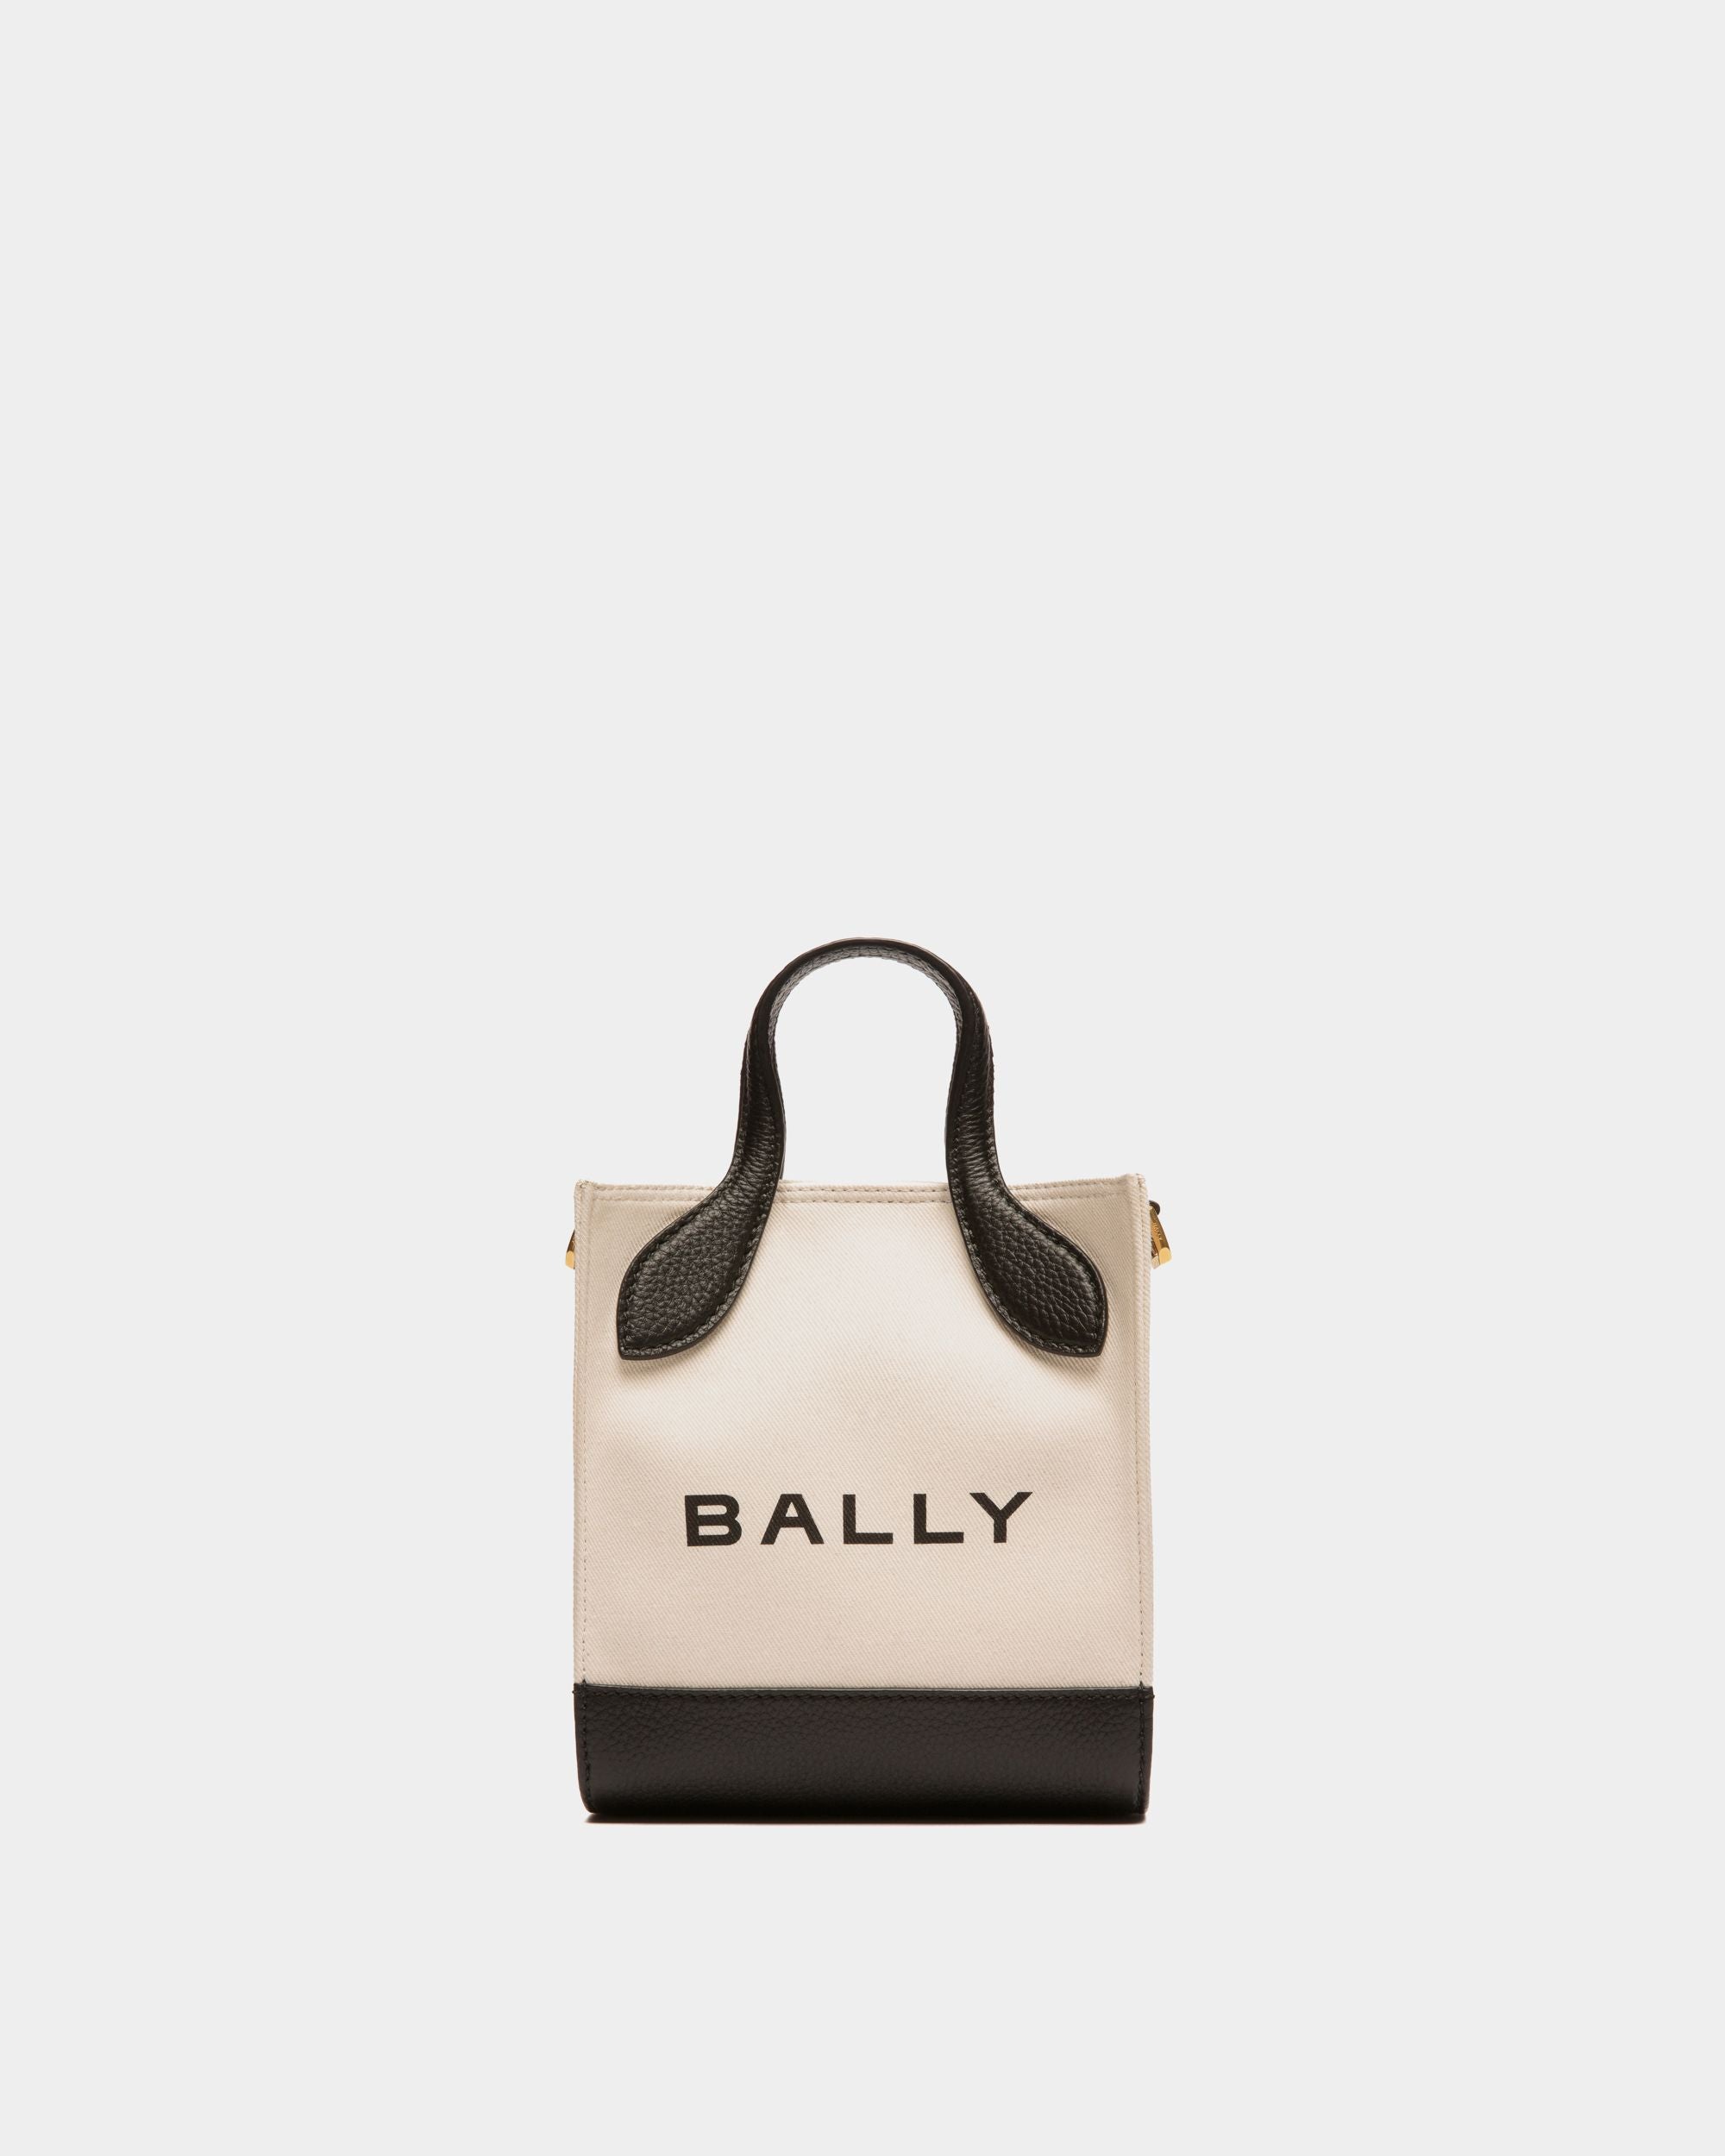 Bar | Tote bag mini da donna in pelle nera e tela color neutro | Bally | Still Life Fronte